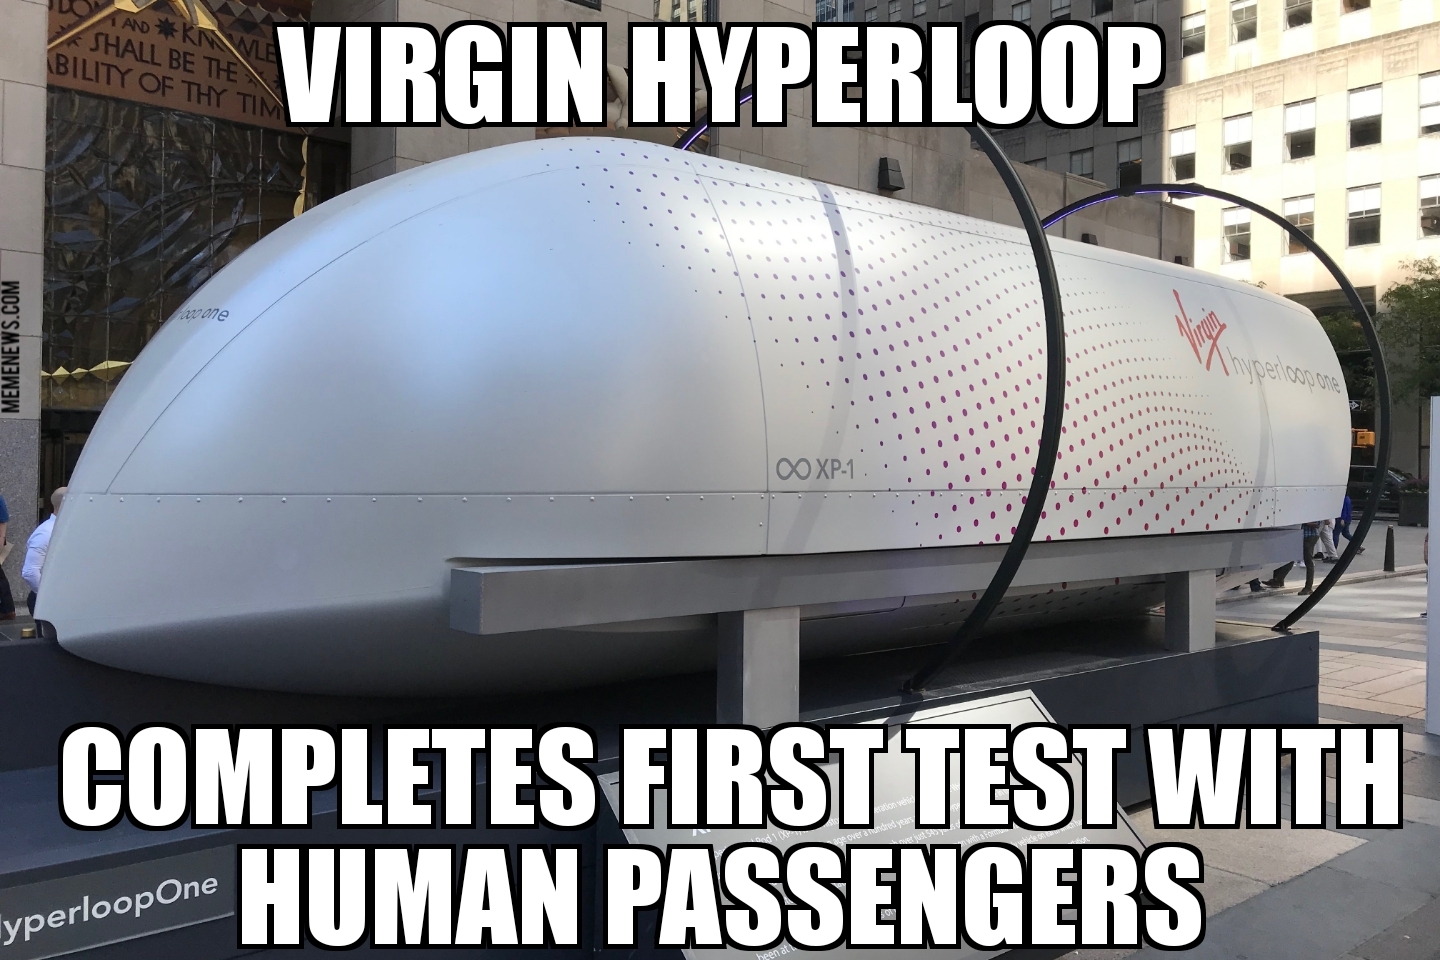 Virgin Hyperloop has first human test